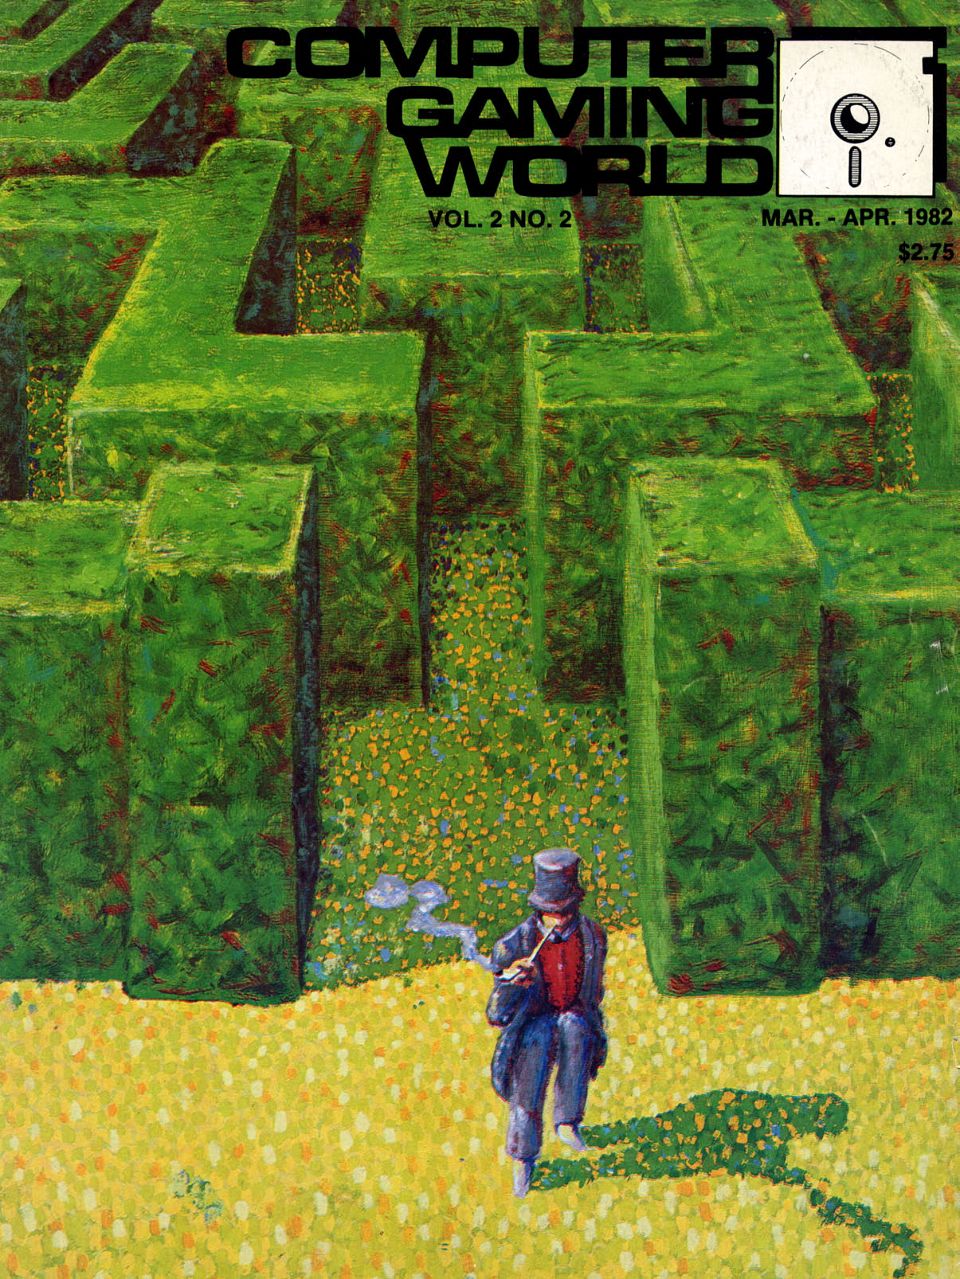 CGW 2.2 (Mar-Apr 1982)